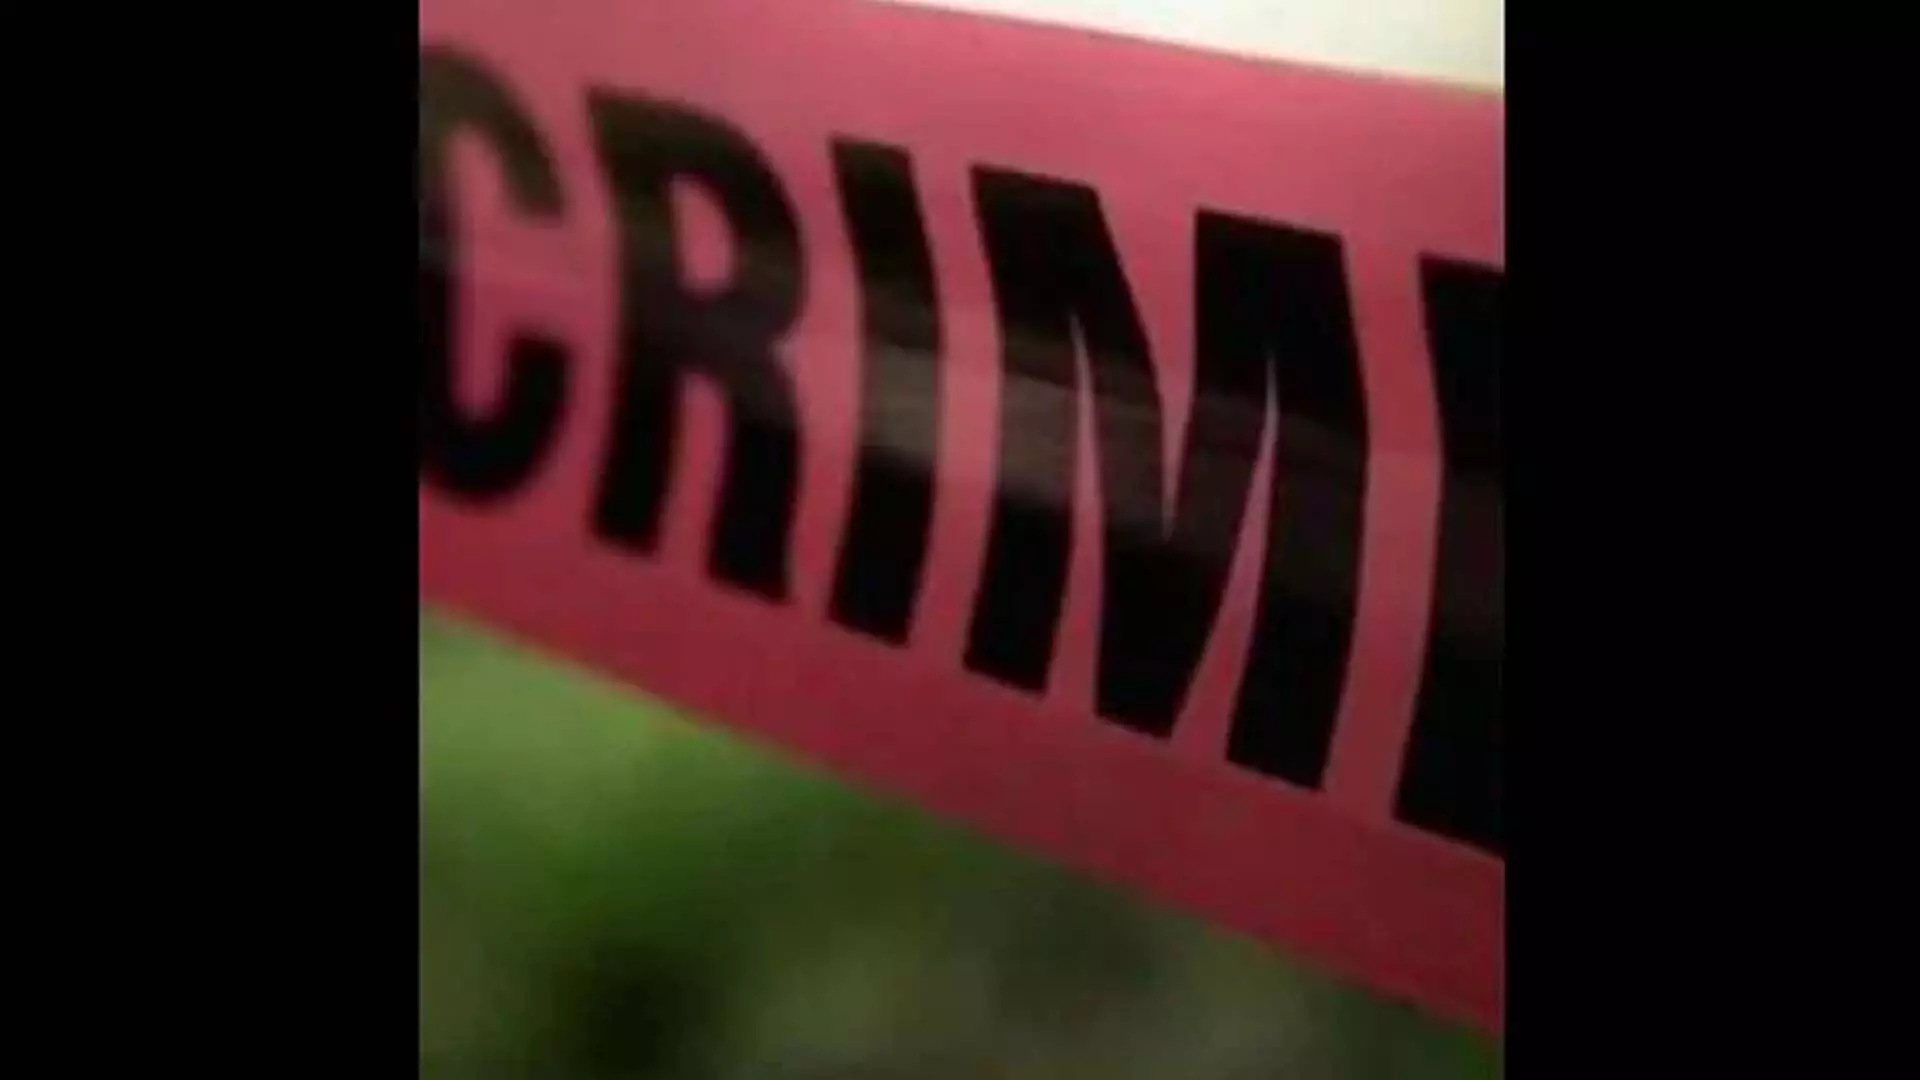 दिल्ली में एक व्यक्ति ने माचिस बांटने से इनकार किया, दो किशोरों ने उसे चाकू मारकर हत्या कर दी